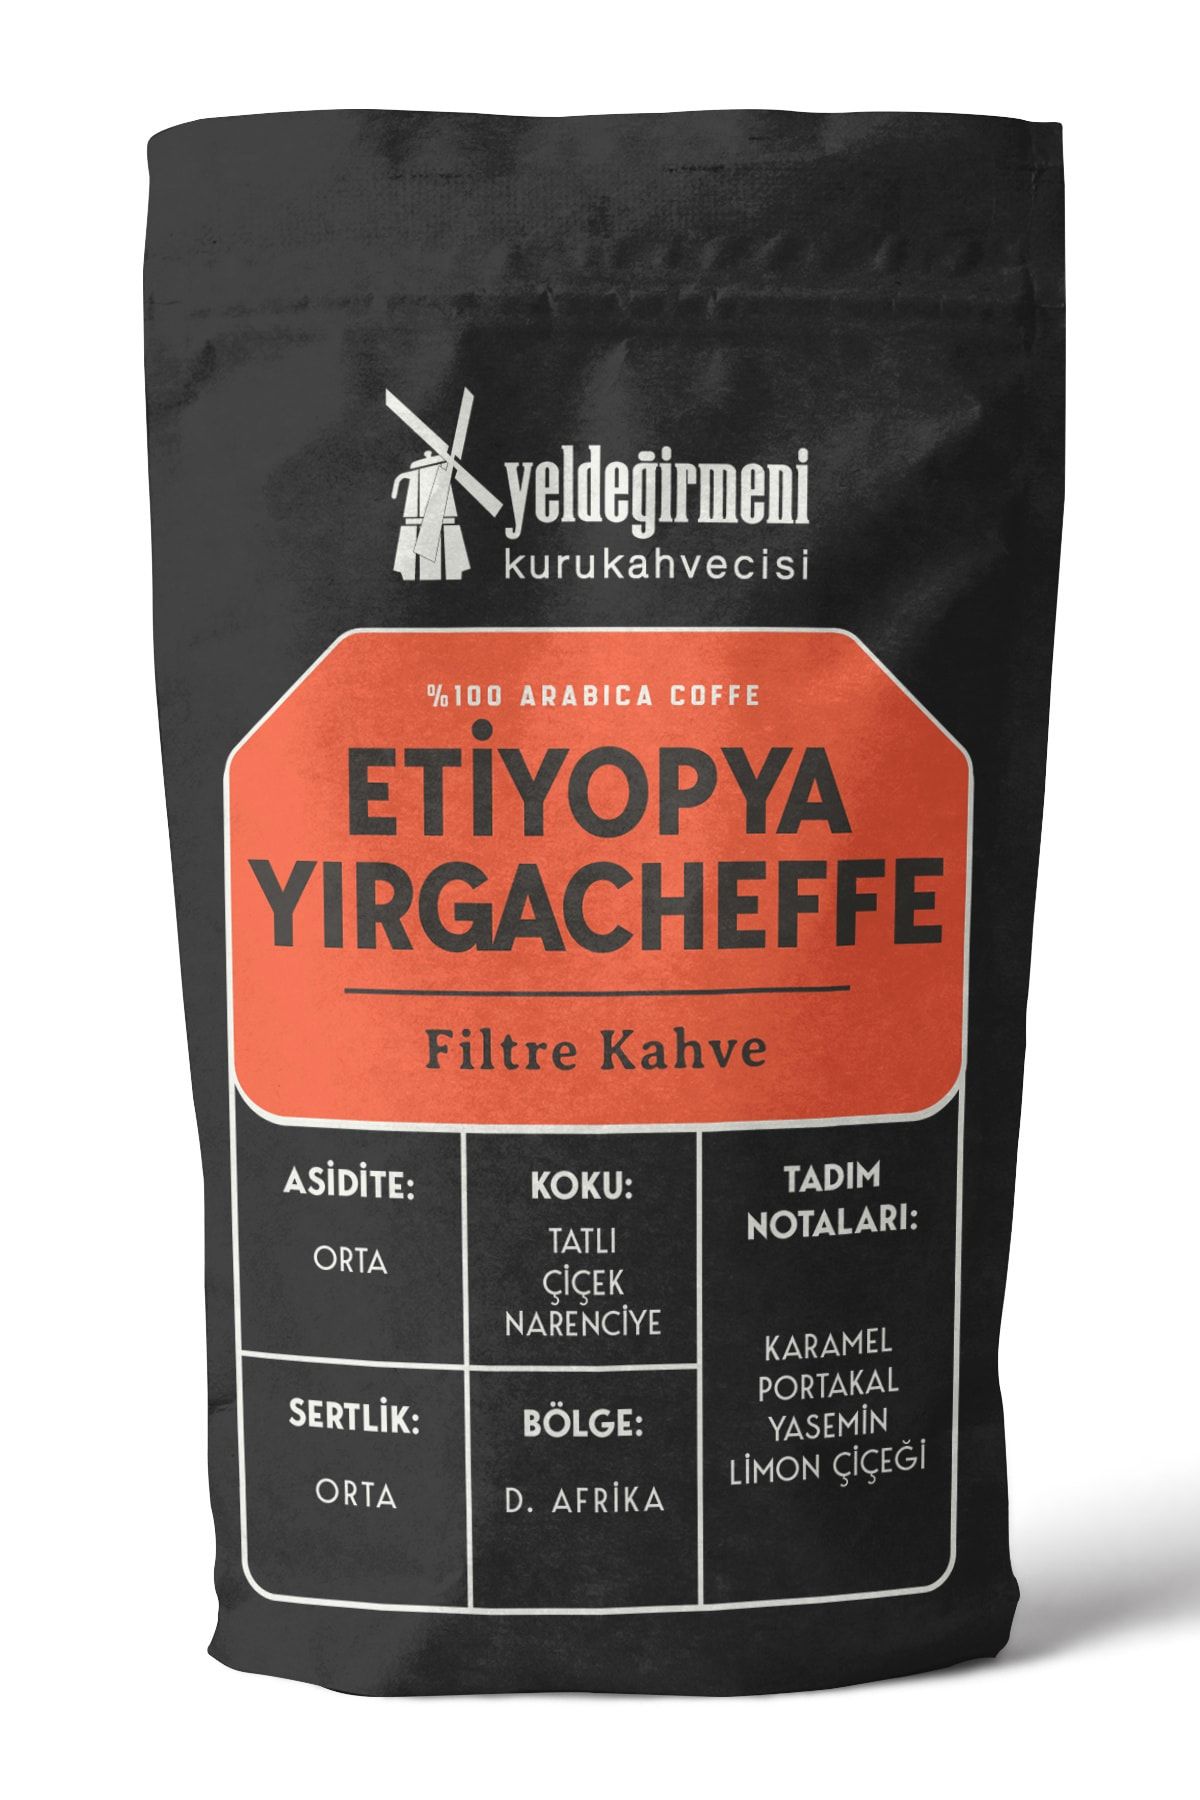 Yeldeğirmeni Kurukahvecisi Etiyopya Yırgacheffe Filtre Kahve 250 gr